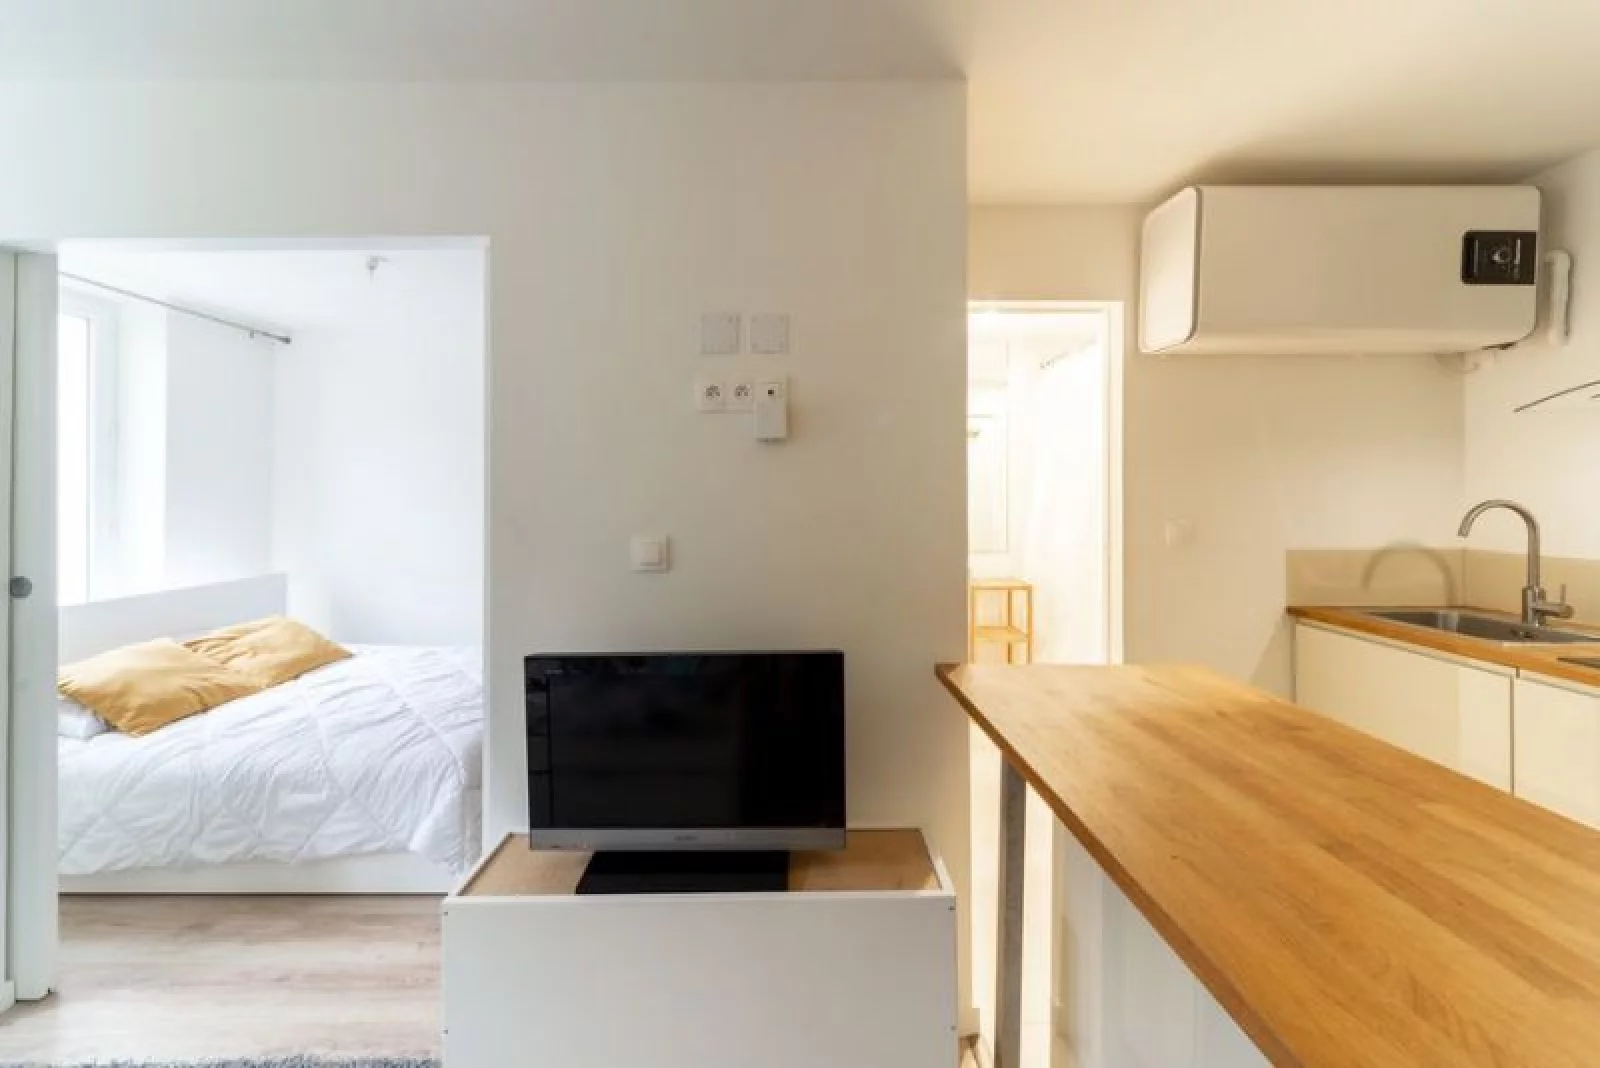 Location appartement meublé 2 pièces 24m² (Paris 20 - Ménilmontant)